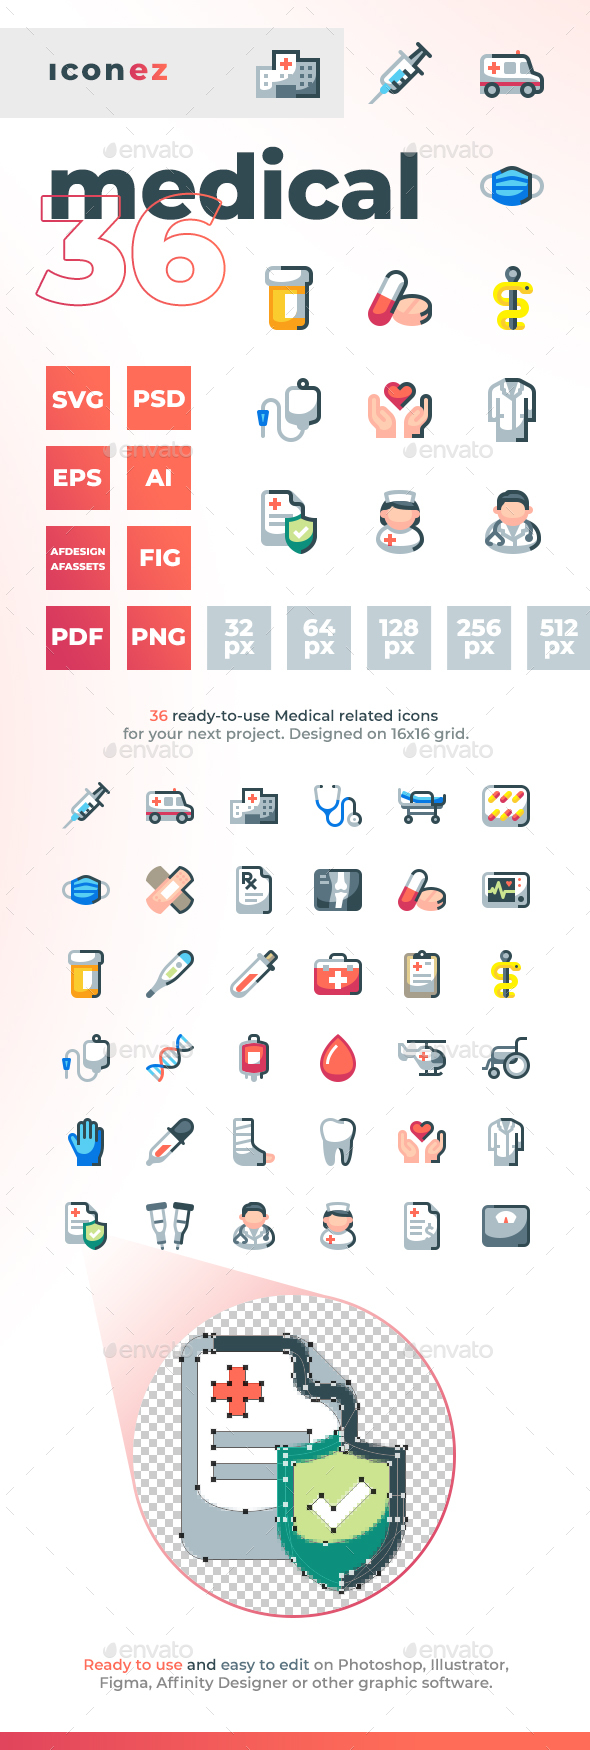 Iconez - Medical Icons